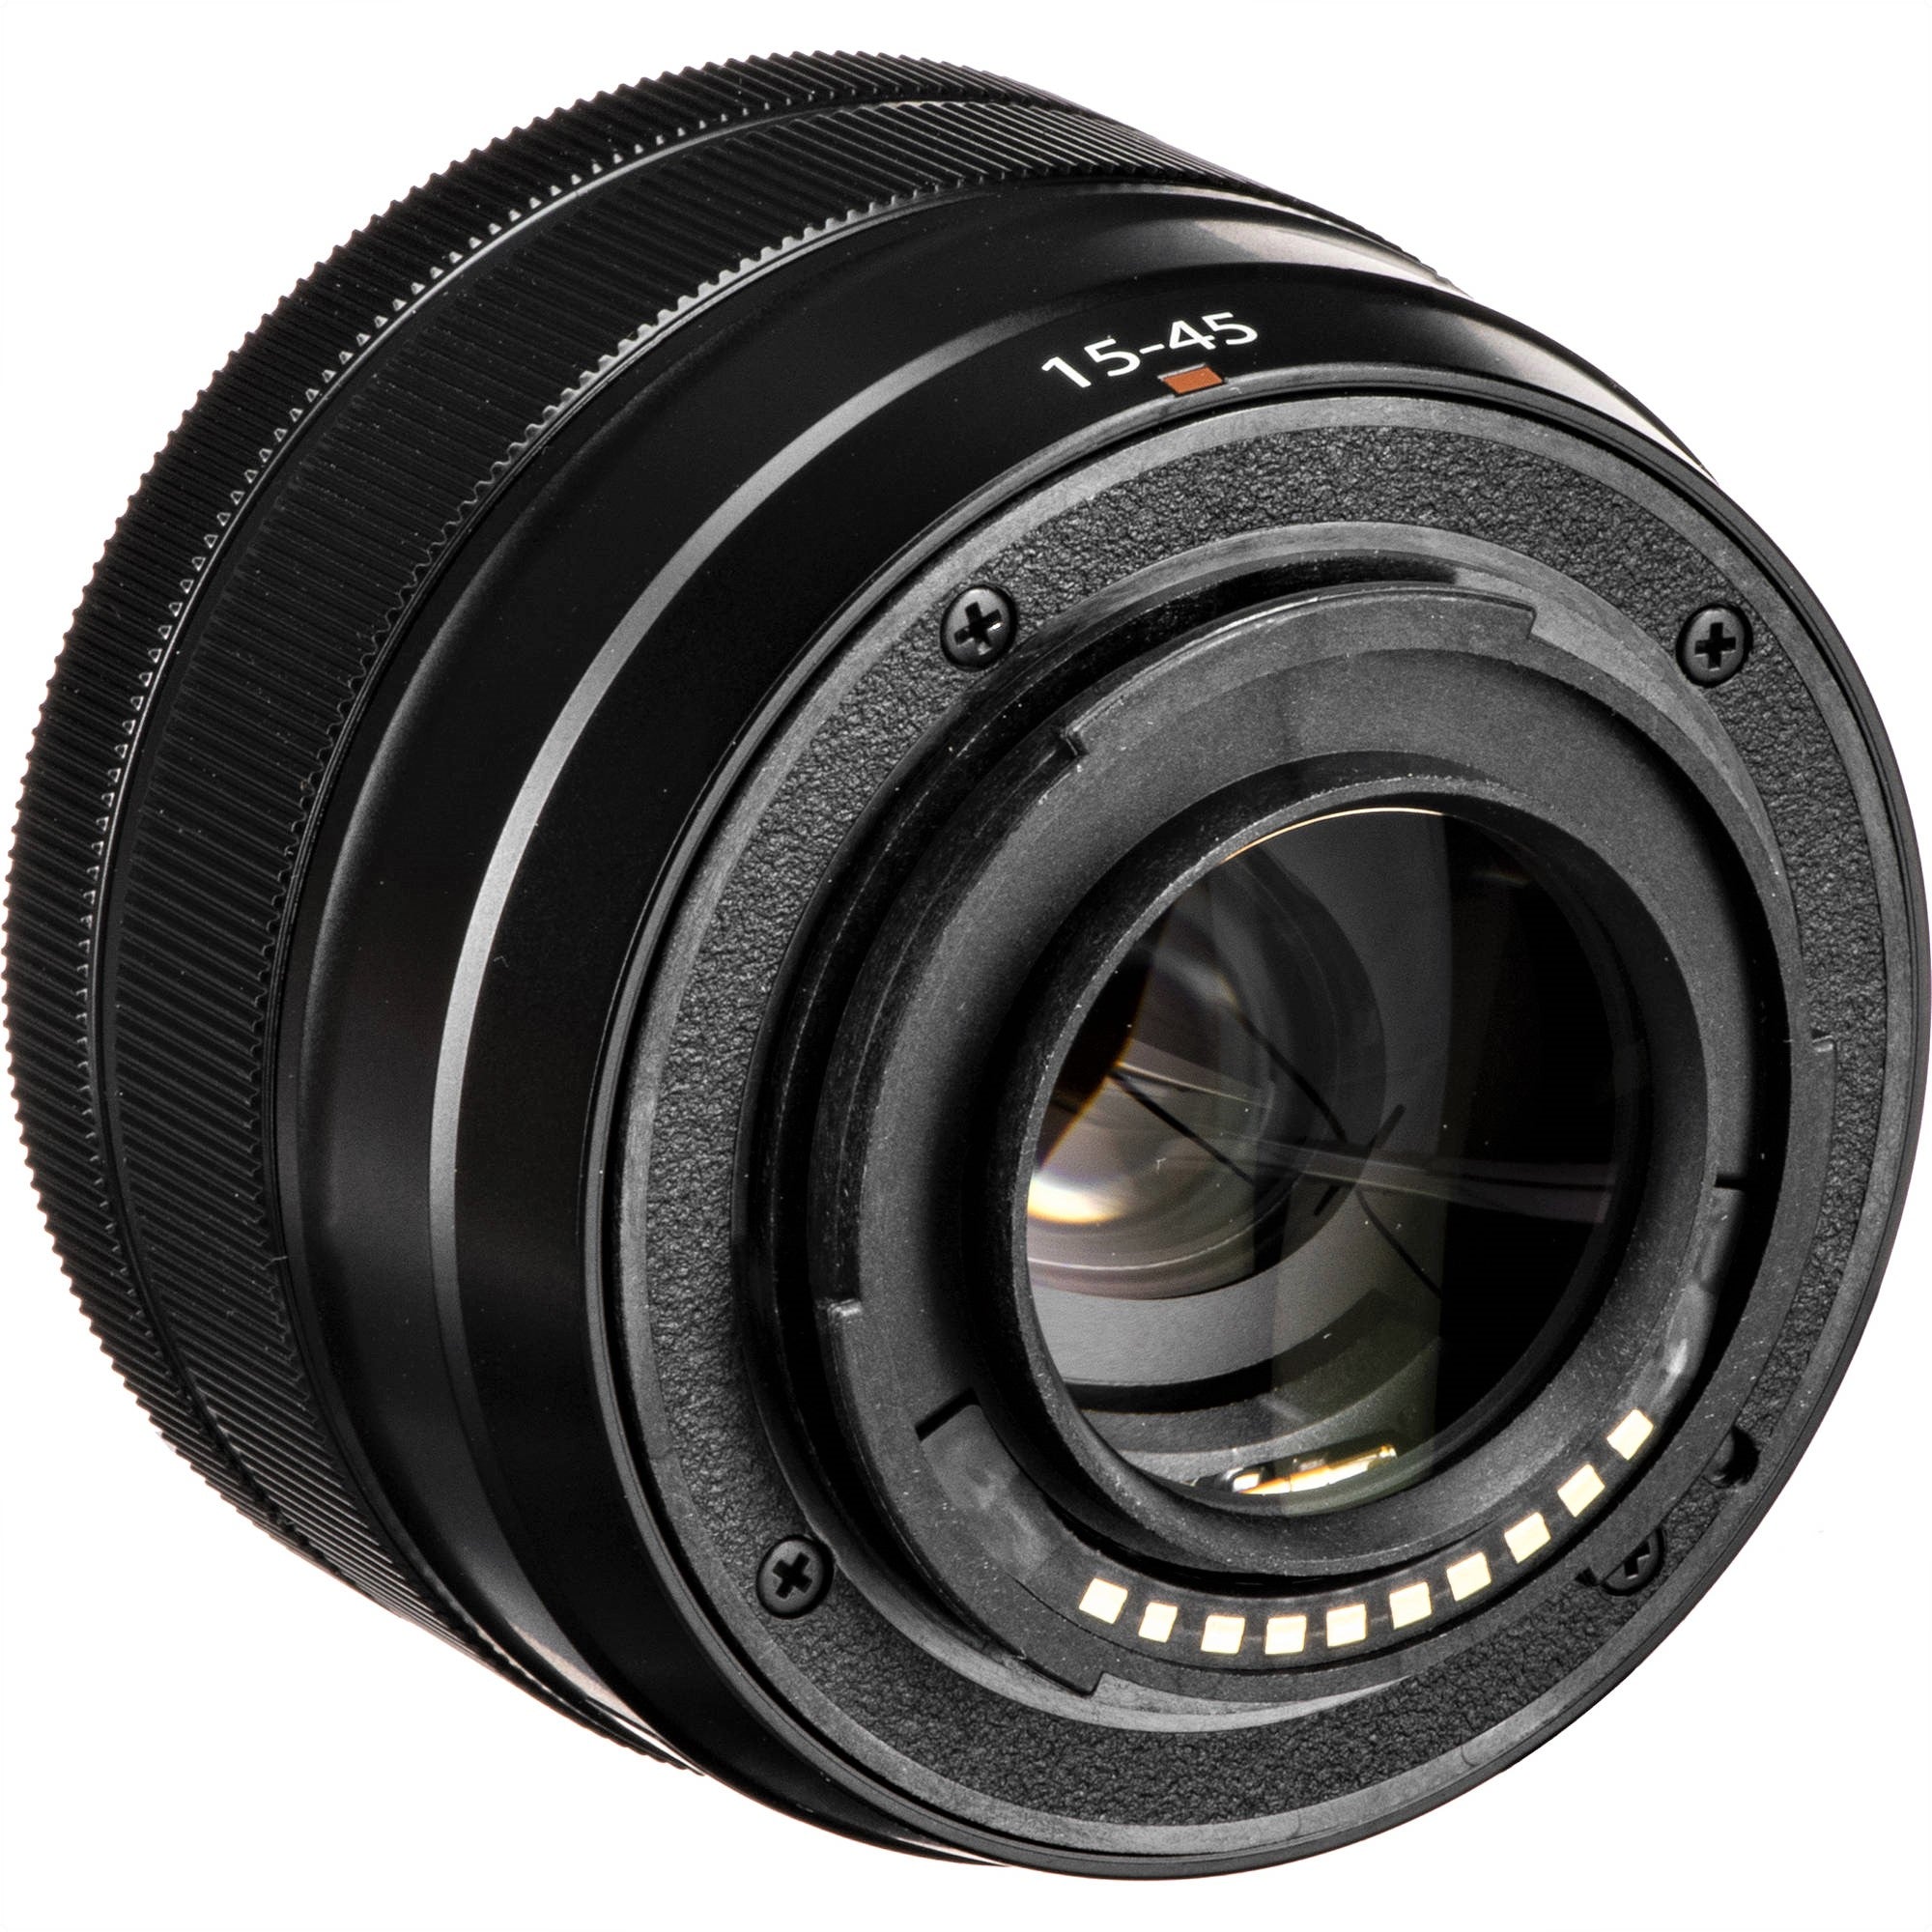 Fujifilm XC 15-45mm F3.5-5.6 OIS PZ Lens - Back Side View